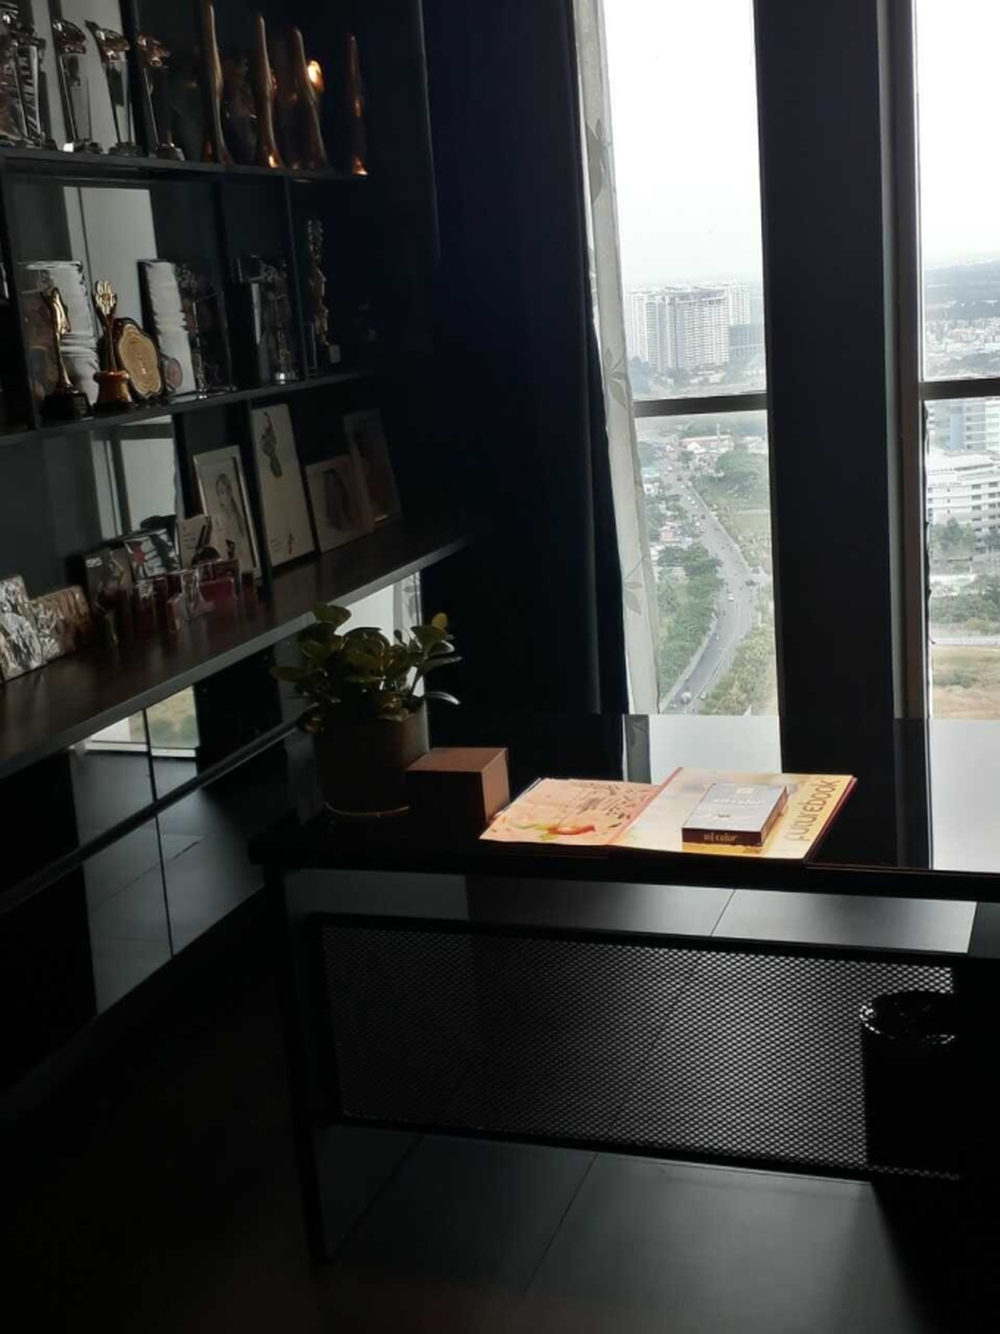 Bên trong căn penthouse cao cấp của Hoàng Thùy Linh: Gia chủ flex thú chơi hoa, cành quả siêu nghệ - Ảnh 8.